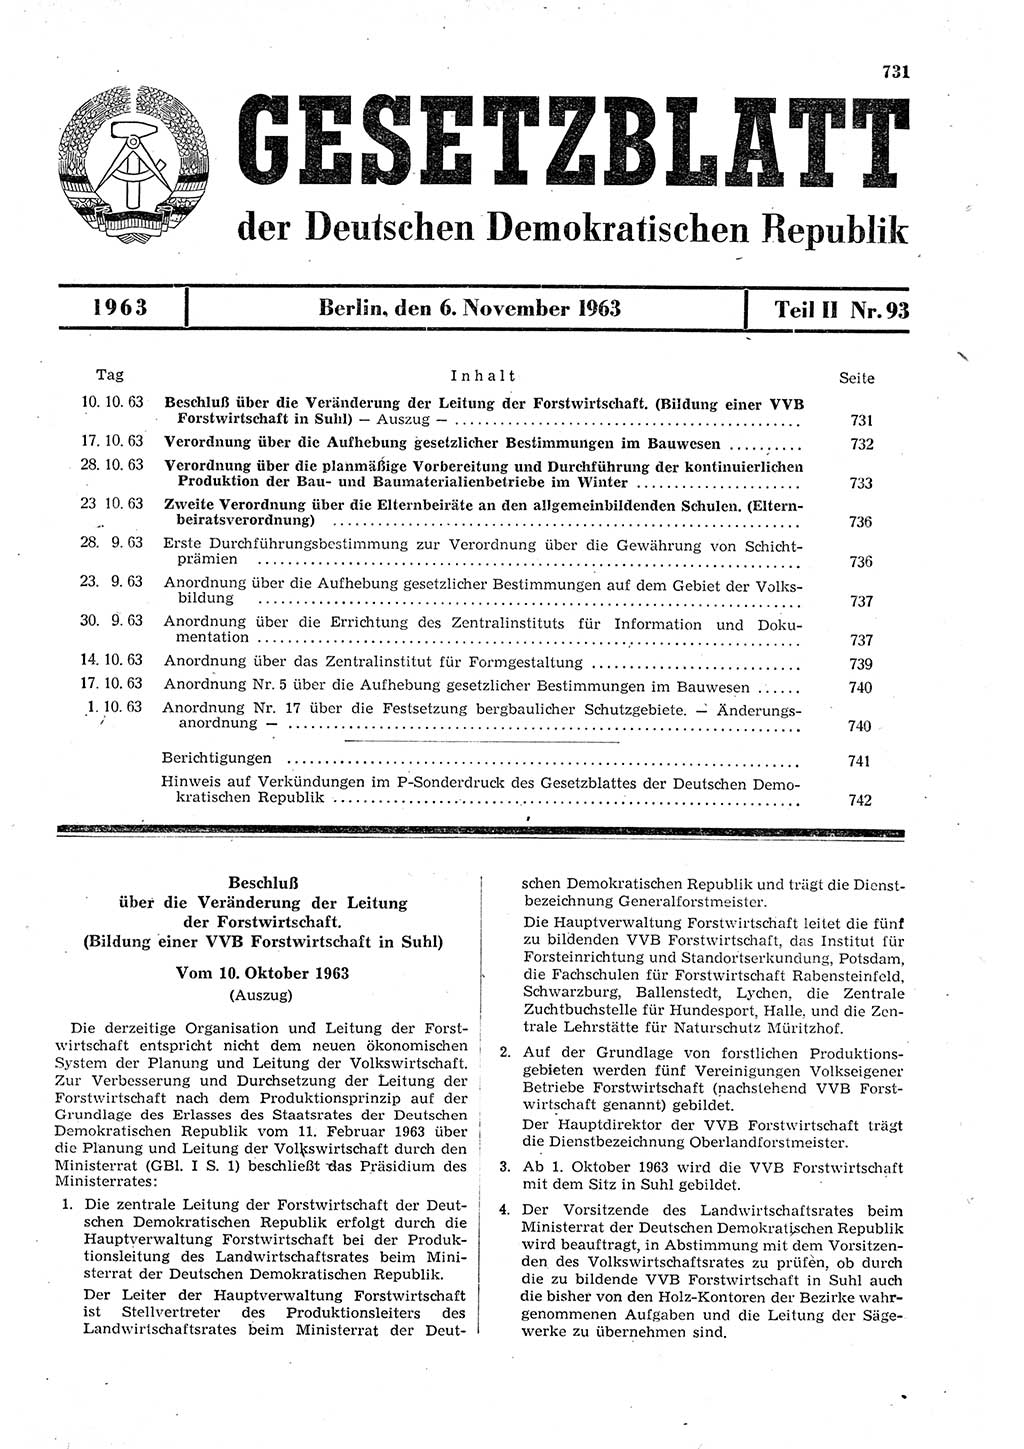 Gesetzblatt (GBl.) der Deutschen Demokratischen Republik (DDR) Teil ⅠⅠ 1963, Seite 731 (GBl. DDR ⅠⅠ 1963, S. 731)